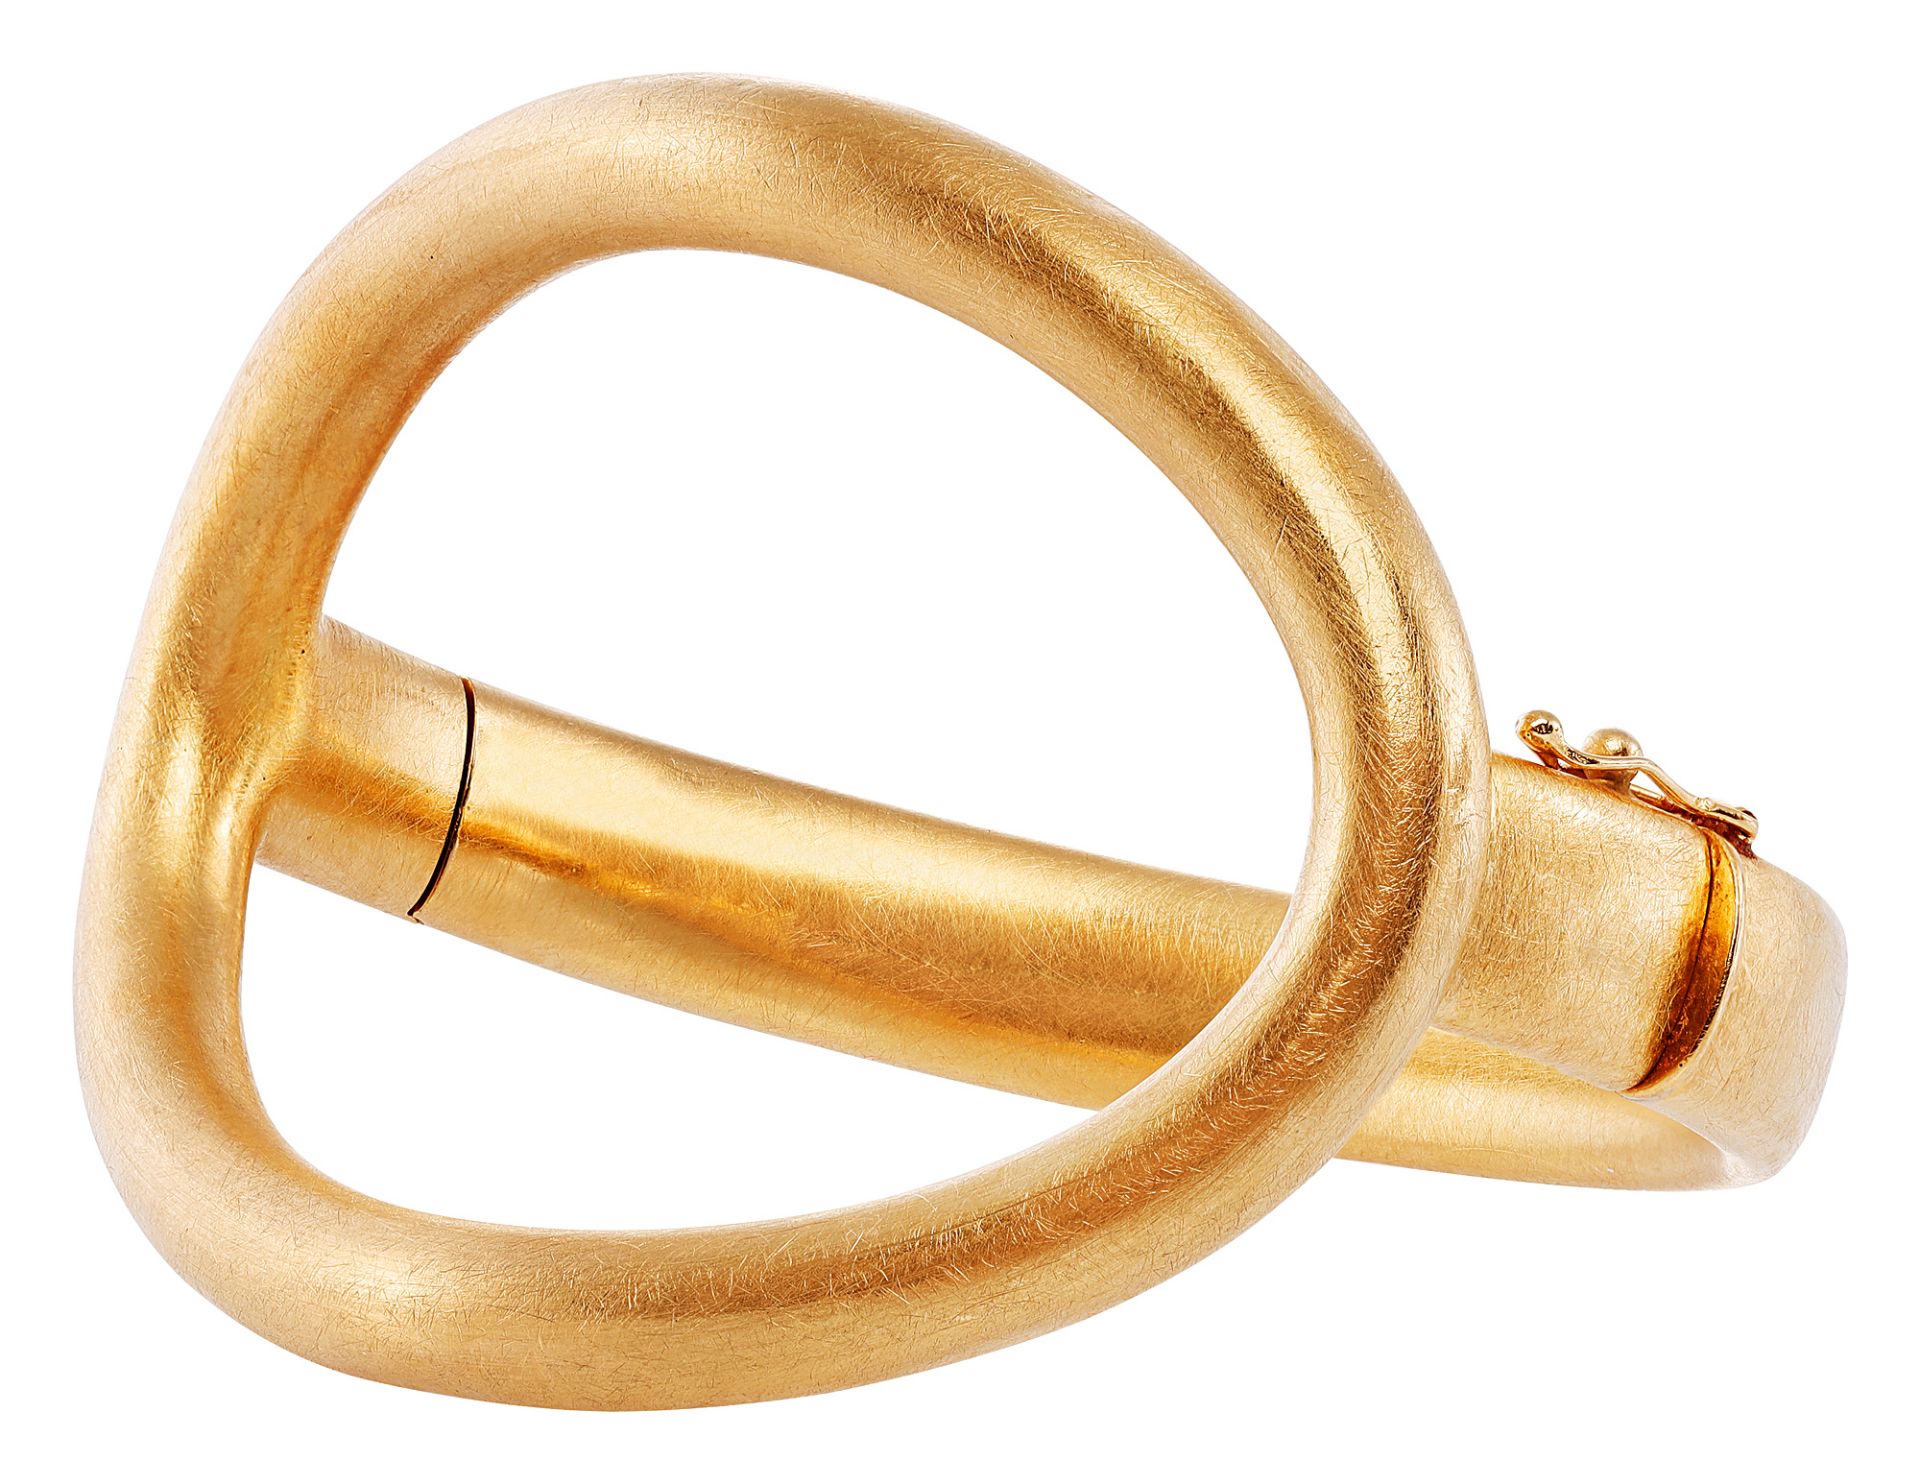 Tiffany & Co. gold bangle - Image 2 of 3